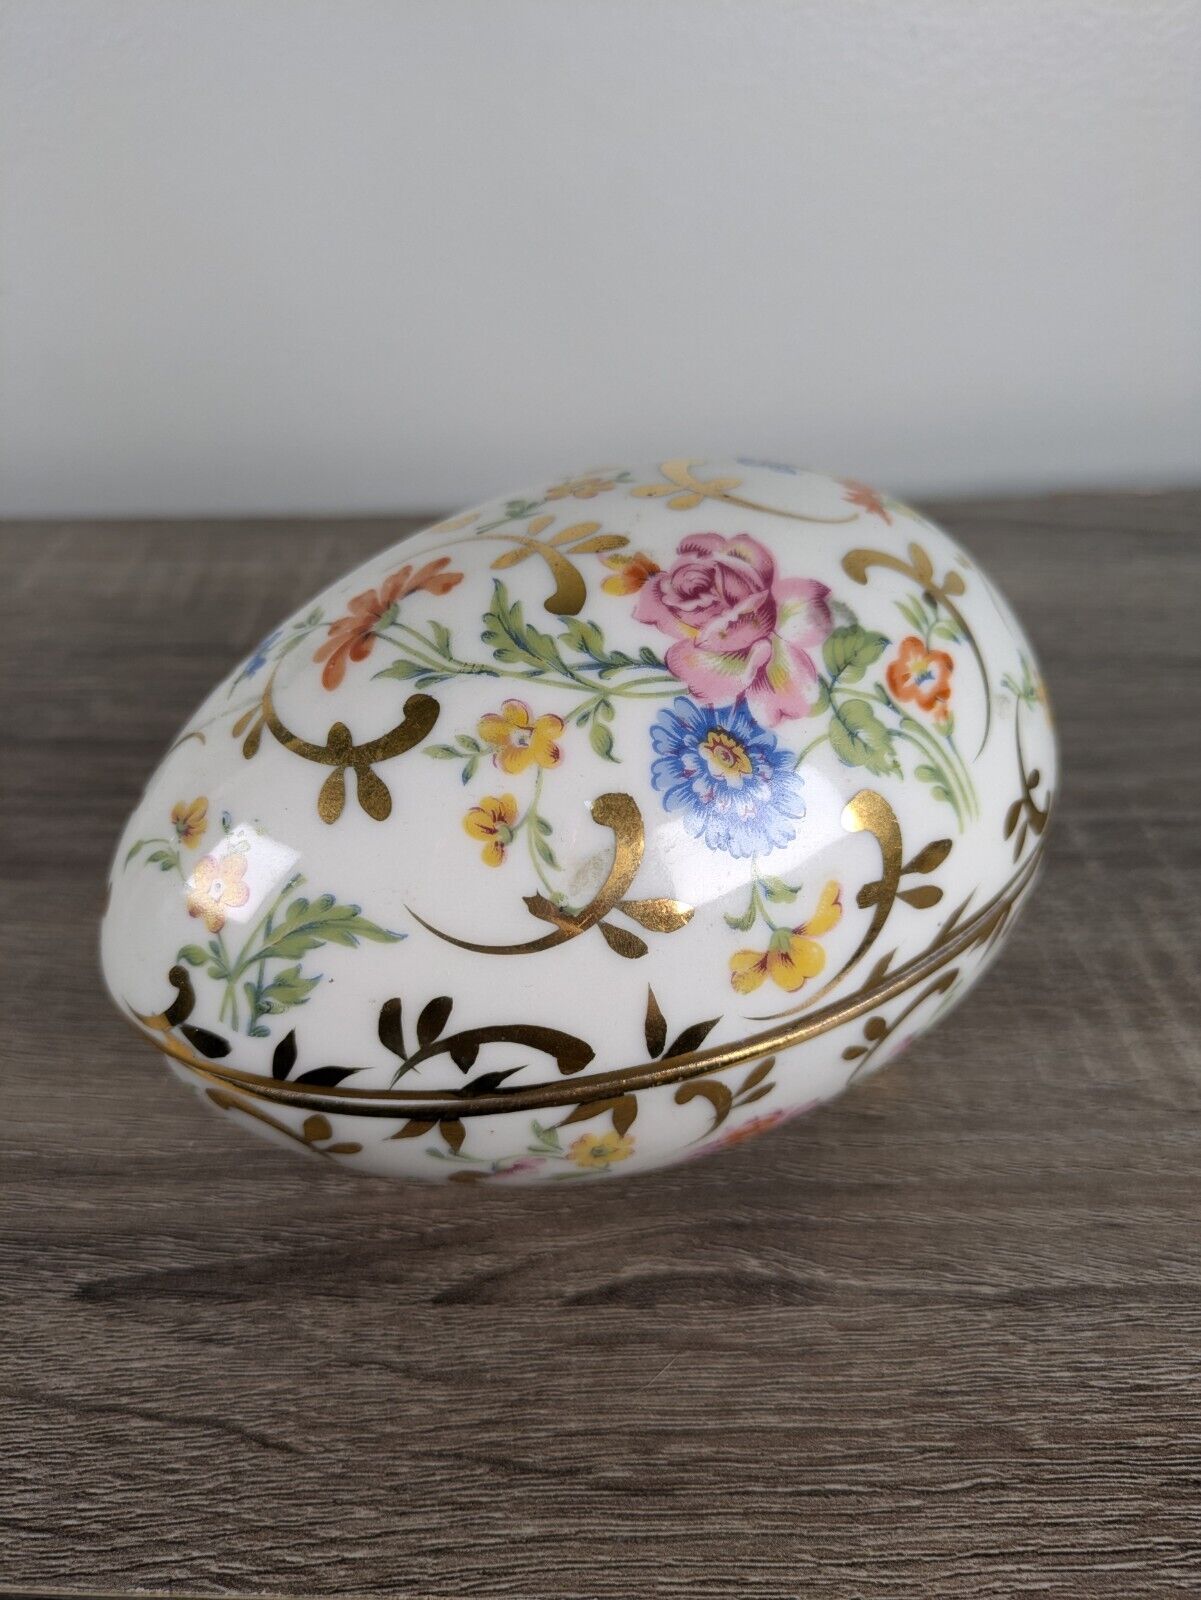 Vintage Porcelain Trinket Box - Oval (Egg) Shaped - Floral Design Gold Accents